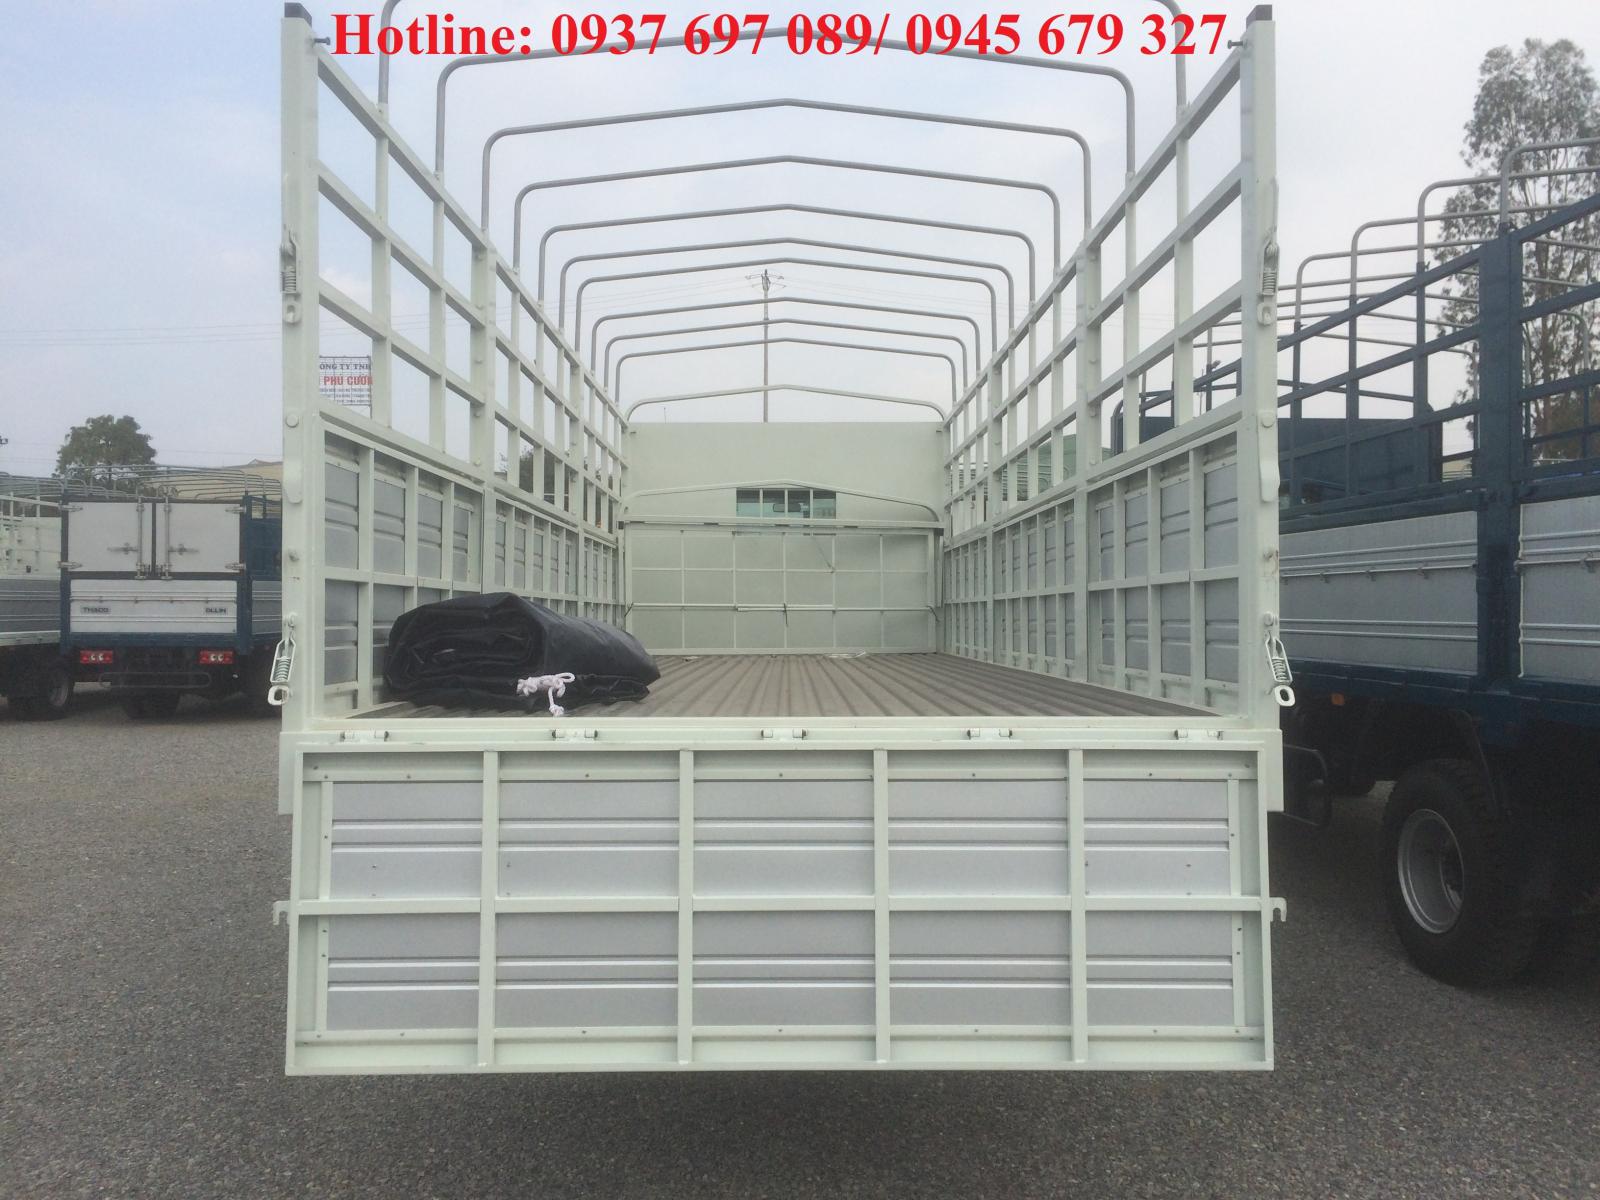 Thaco OLLIN 2017 - Xe tải thaco Ollin 700A/B/C 7 tấn ga cơ thùng 6m2